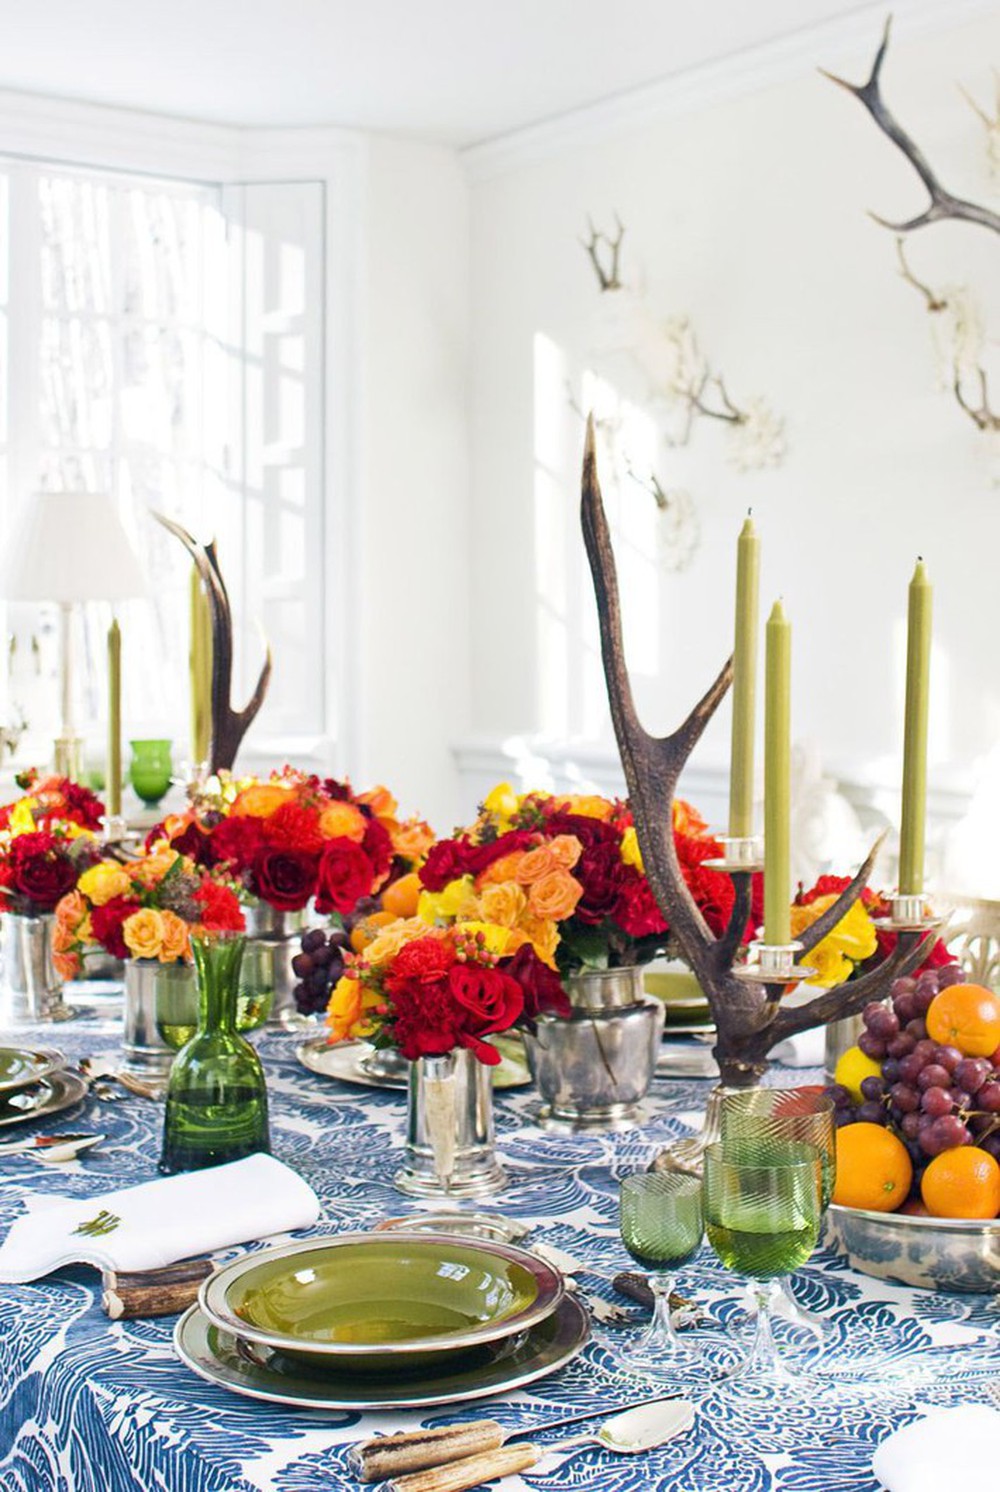 10 cách trang trí bàn ăn với hoa khiến mùa thu bừng sáng trong nhà của bạn - Ảnh 5.